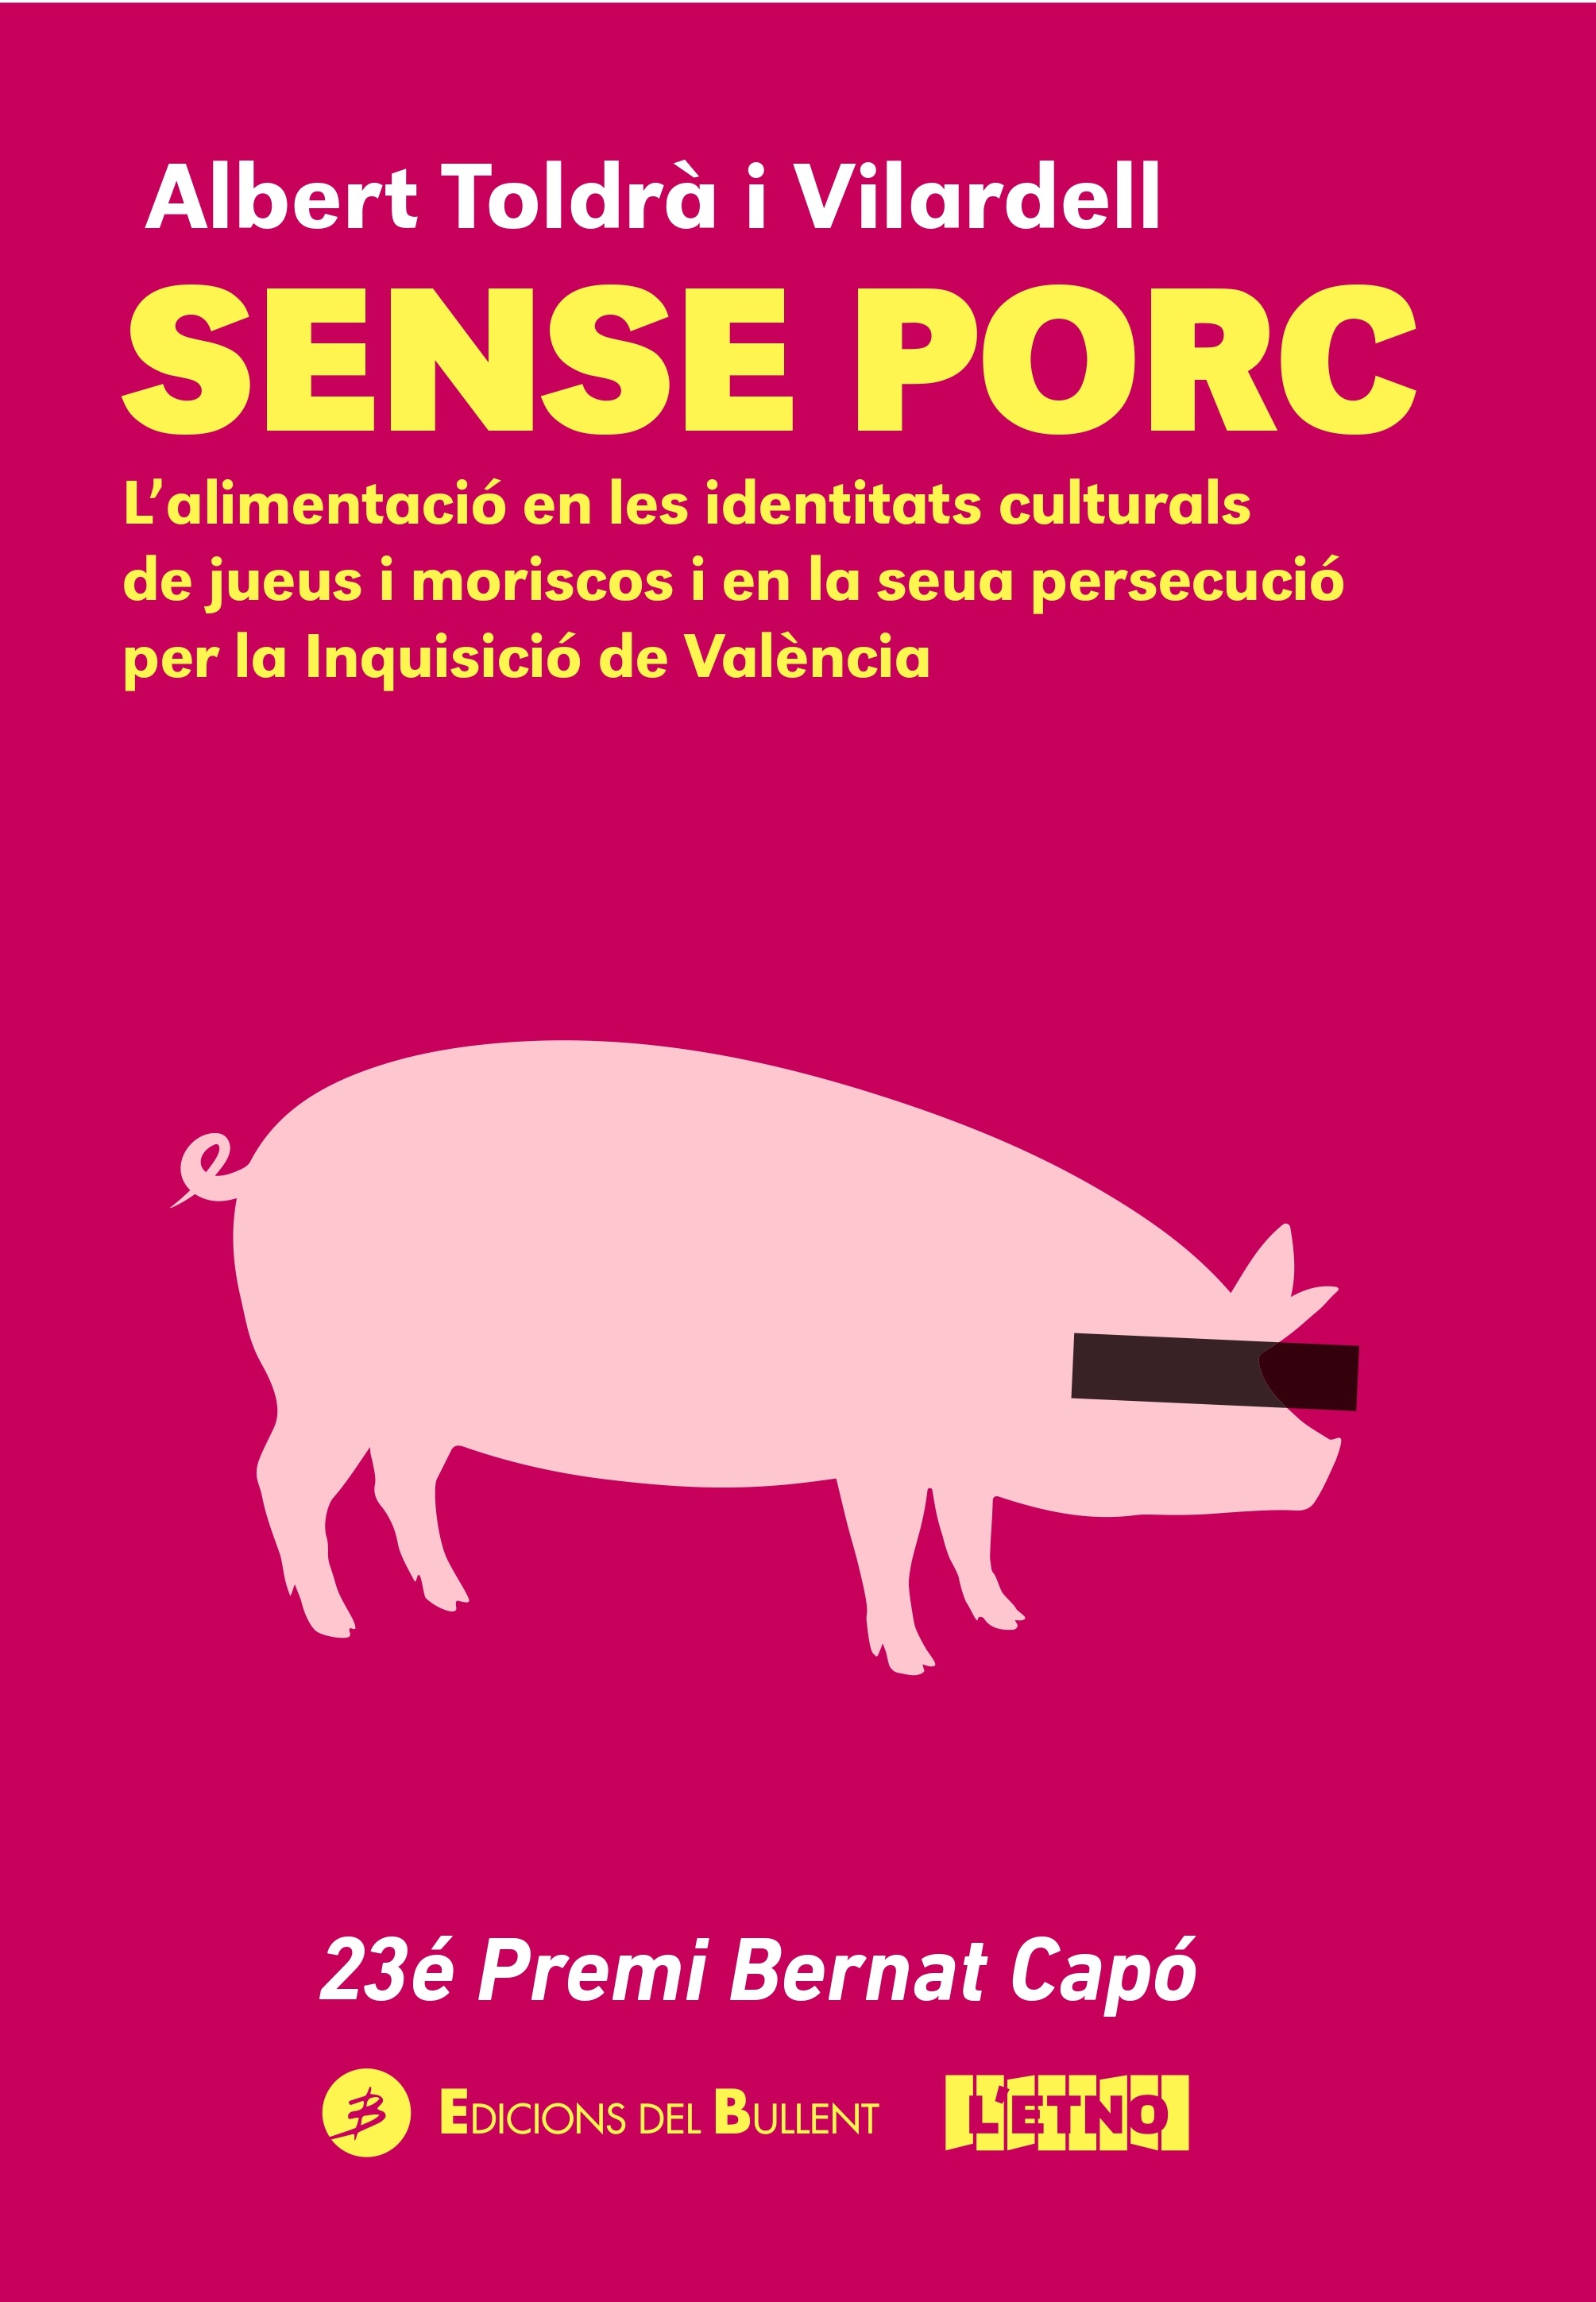 Sense porc